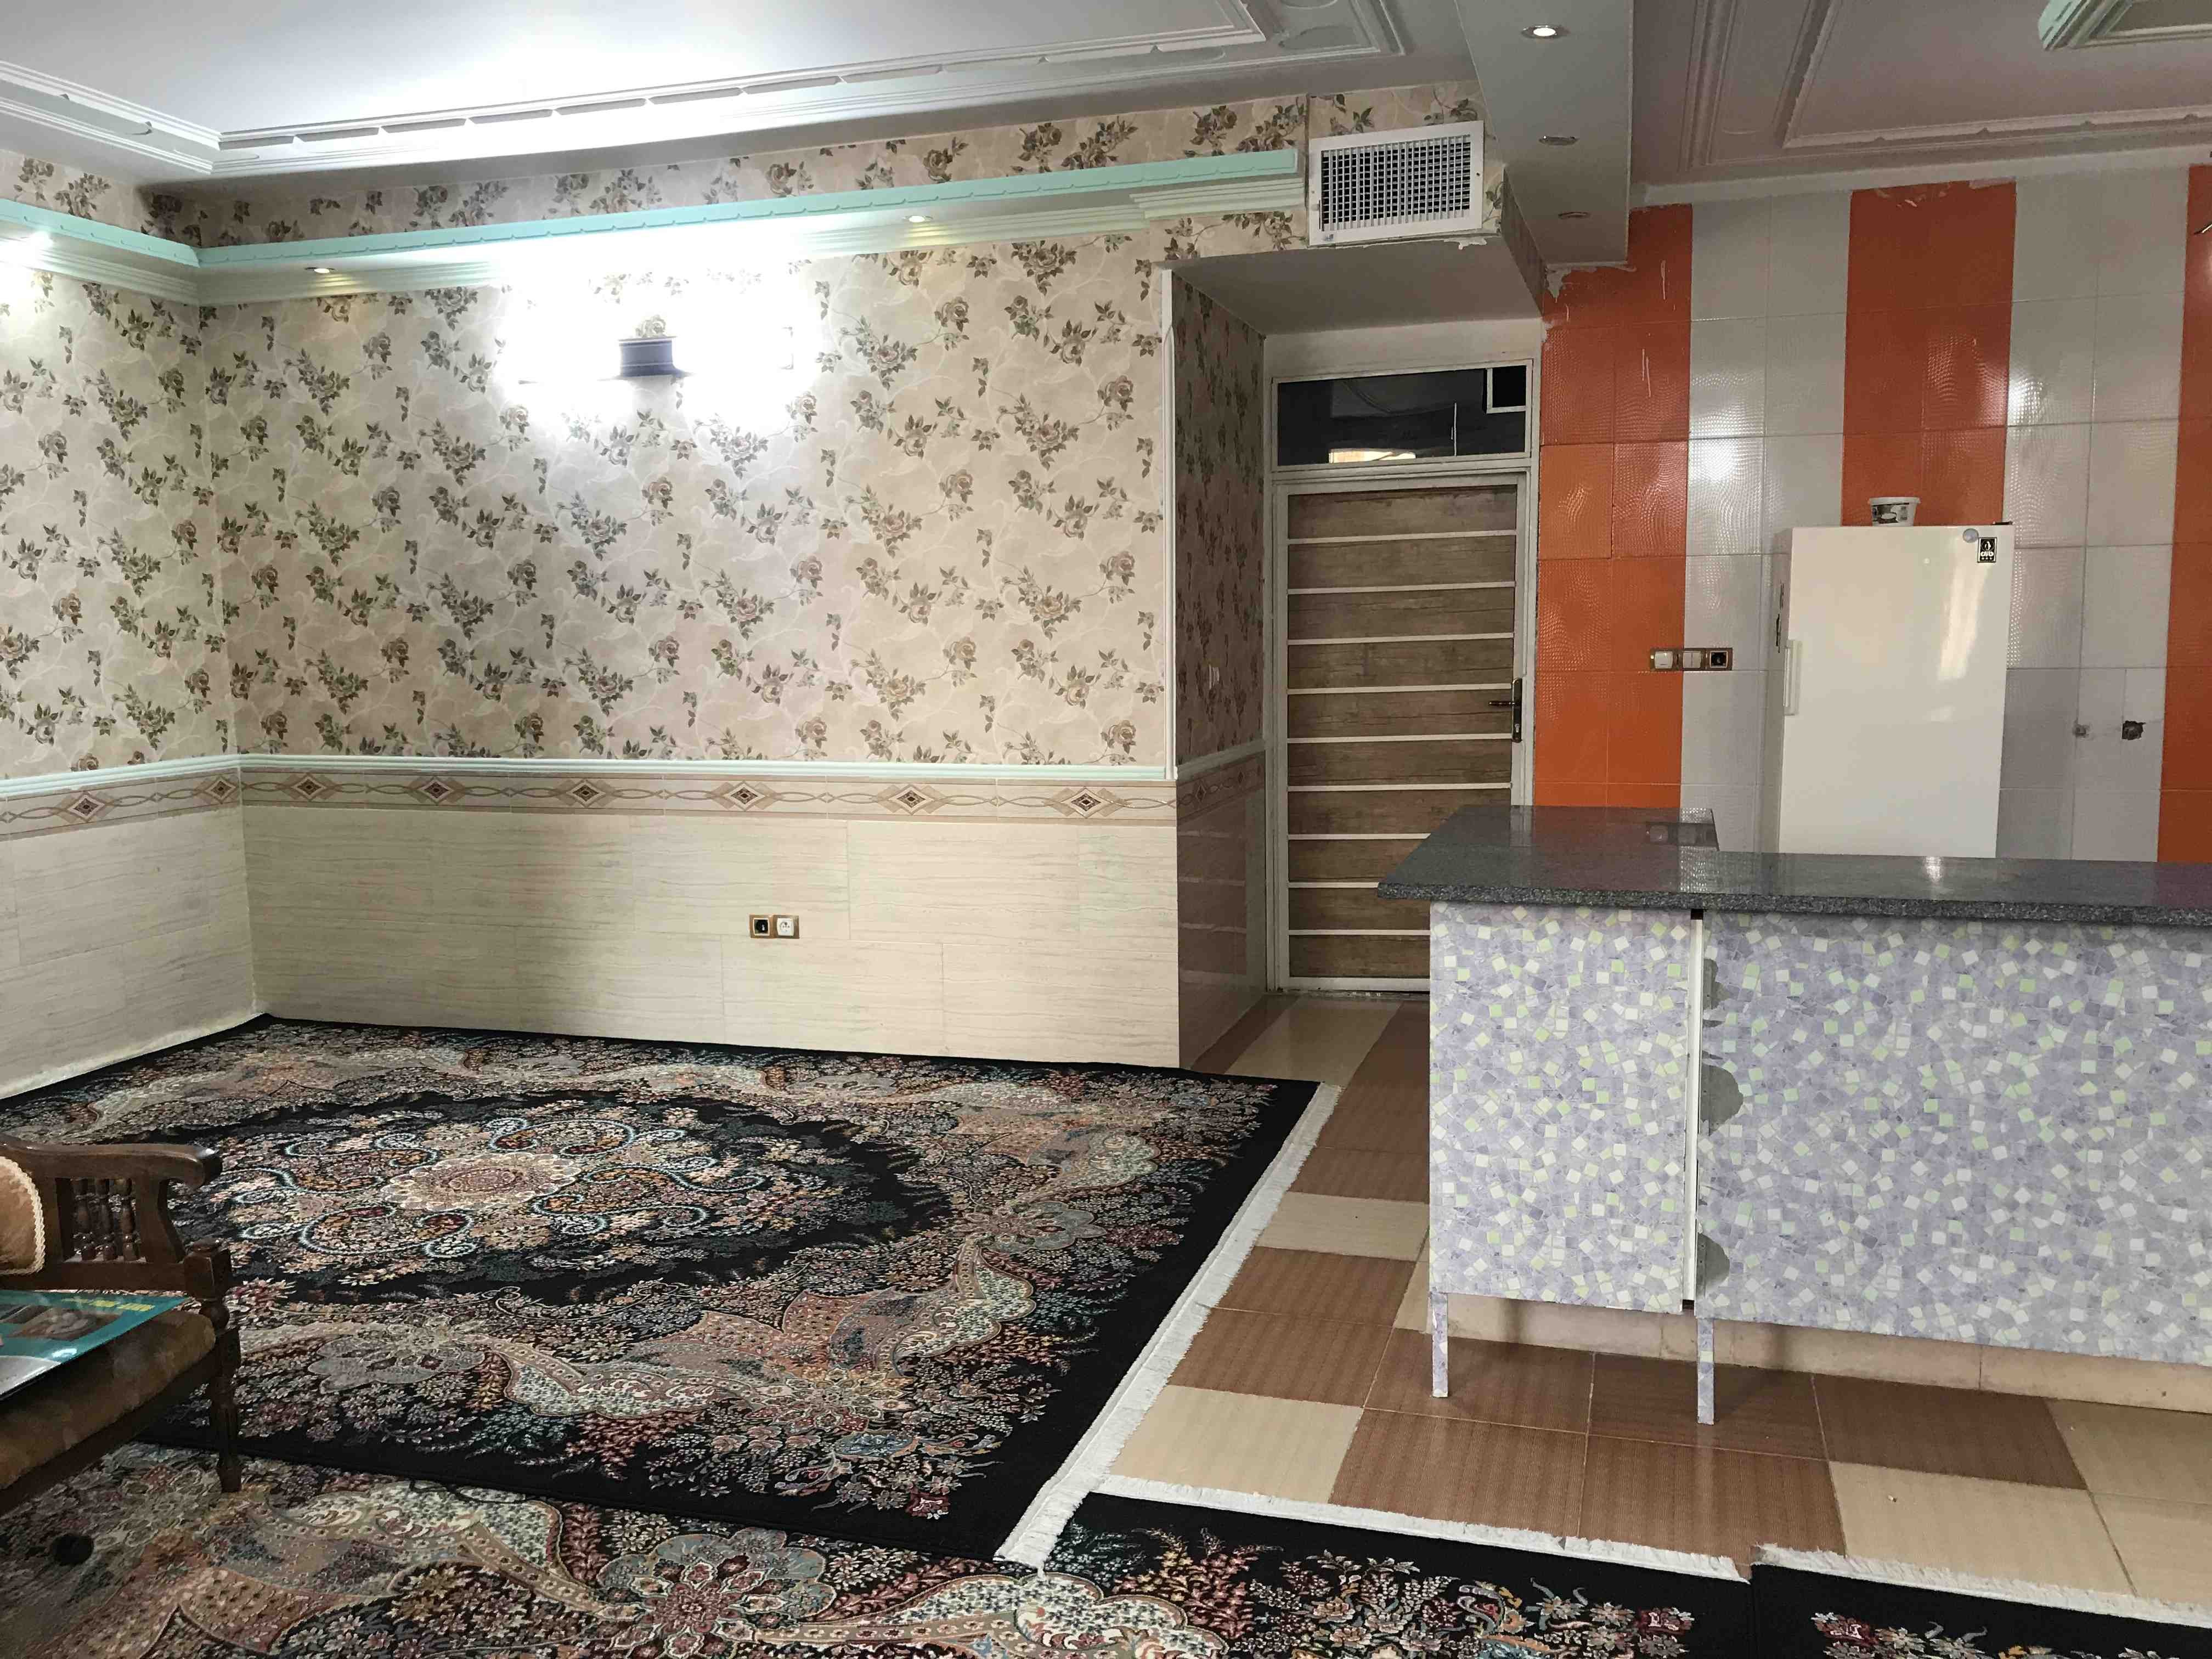 شهری اجاره منزل ویلایی ارزان در عدالت شیراز 